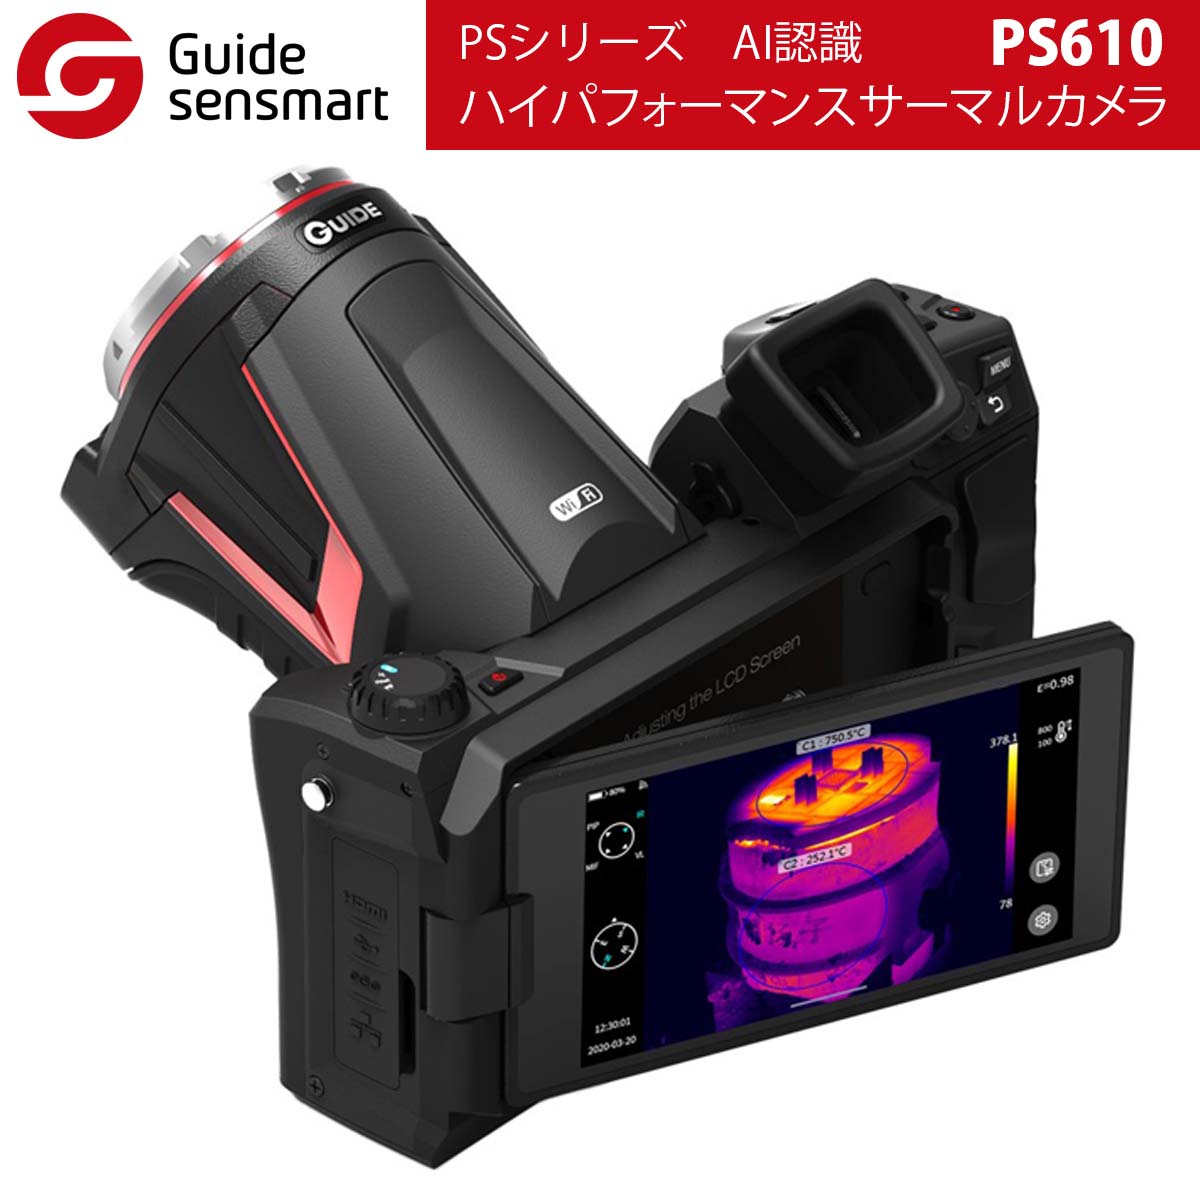 Guide sensmart PSシリーズ ハイパフォーマンスサーマルカメラ PS610 温度計,ハンドヘルドサーモグラフィ サーマルカメラ 専門総合サイト・アットサーマル